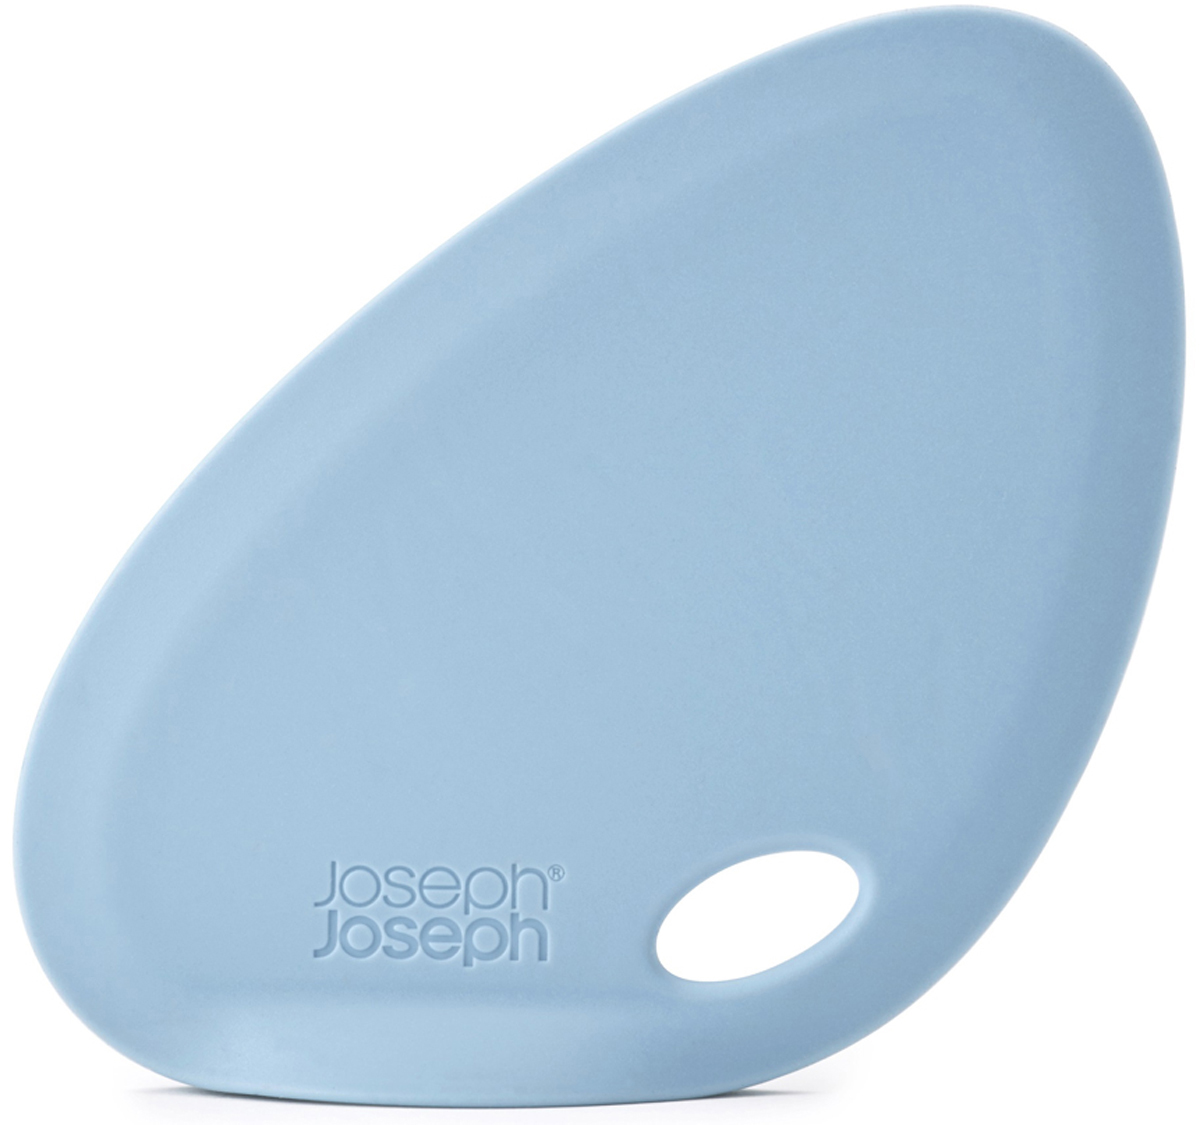 фото Скребок для миски Joseph Joseph "Fin", силиконовый, цвет: голубой